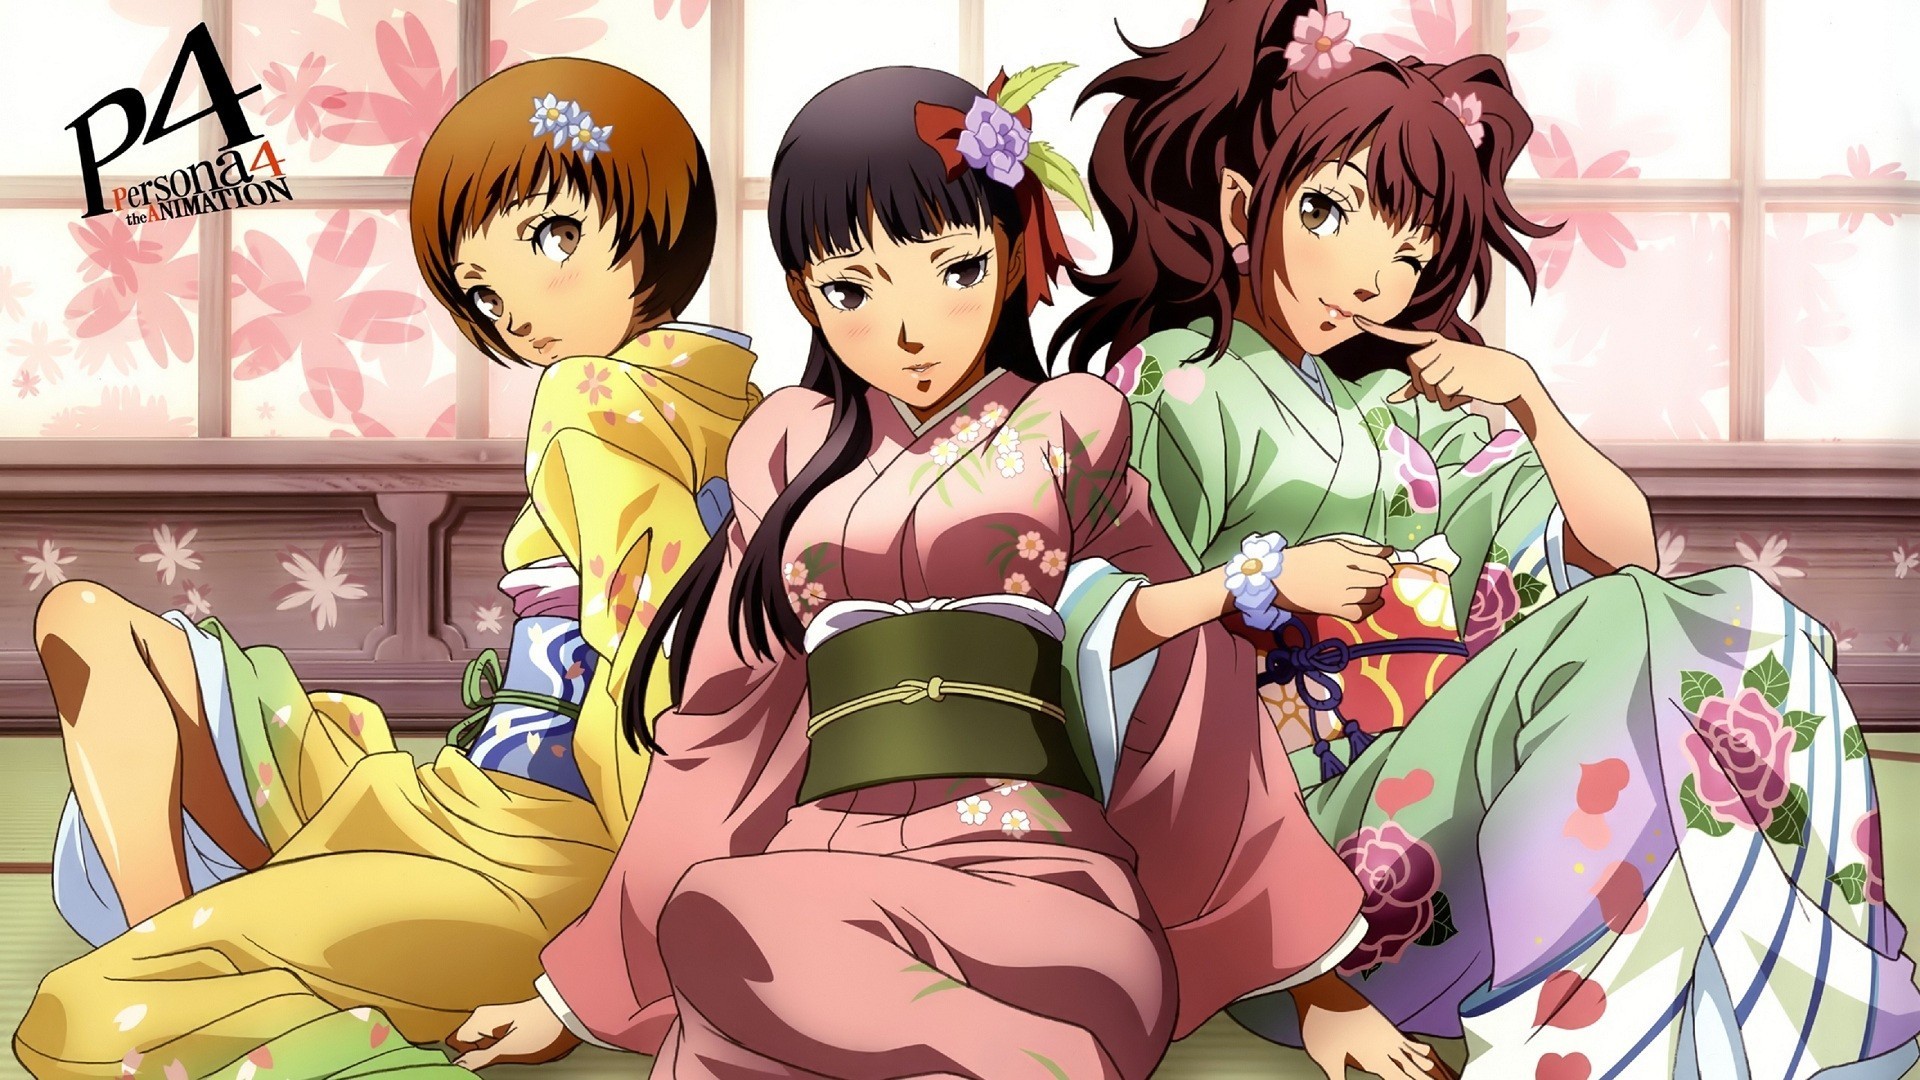 Persona Series Persona 4 Anime Girls Satonaka Chie Amagi Yukiko Kujikawa Rise Anime 1920x1080